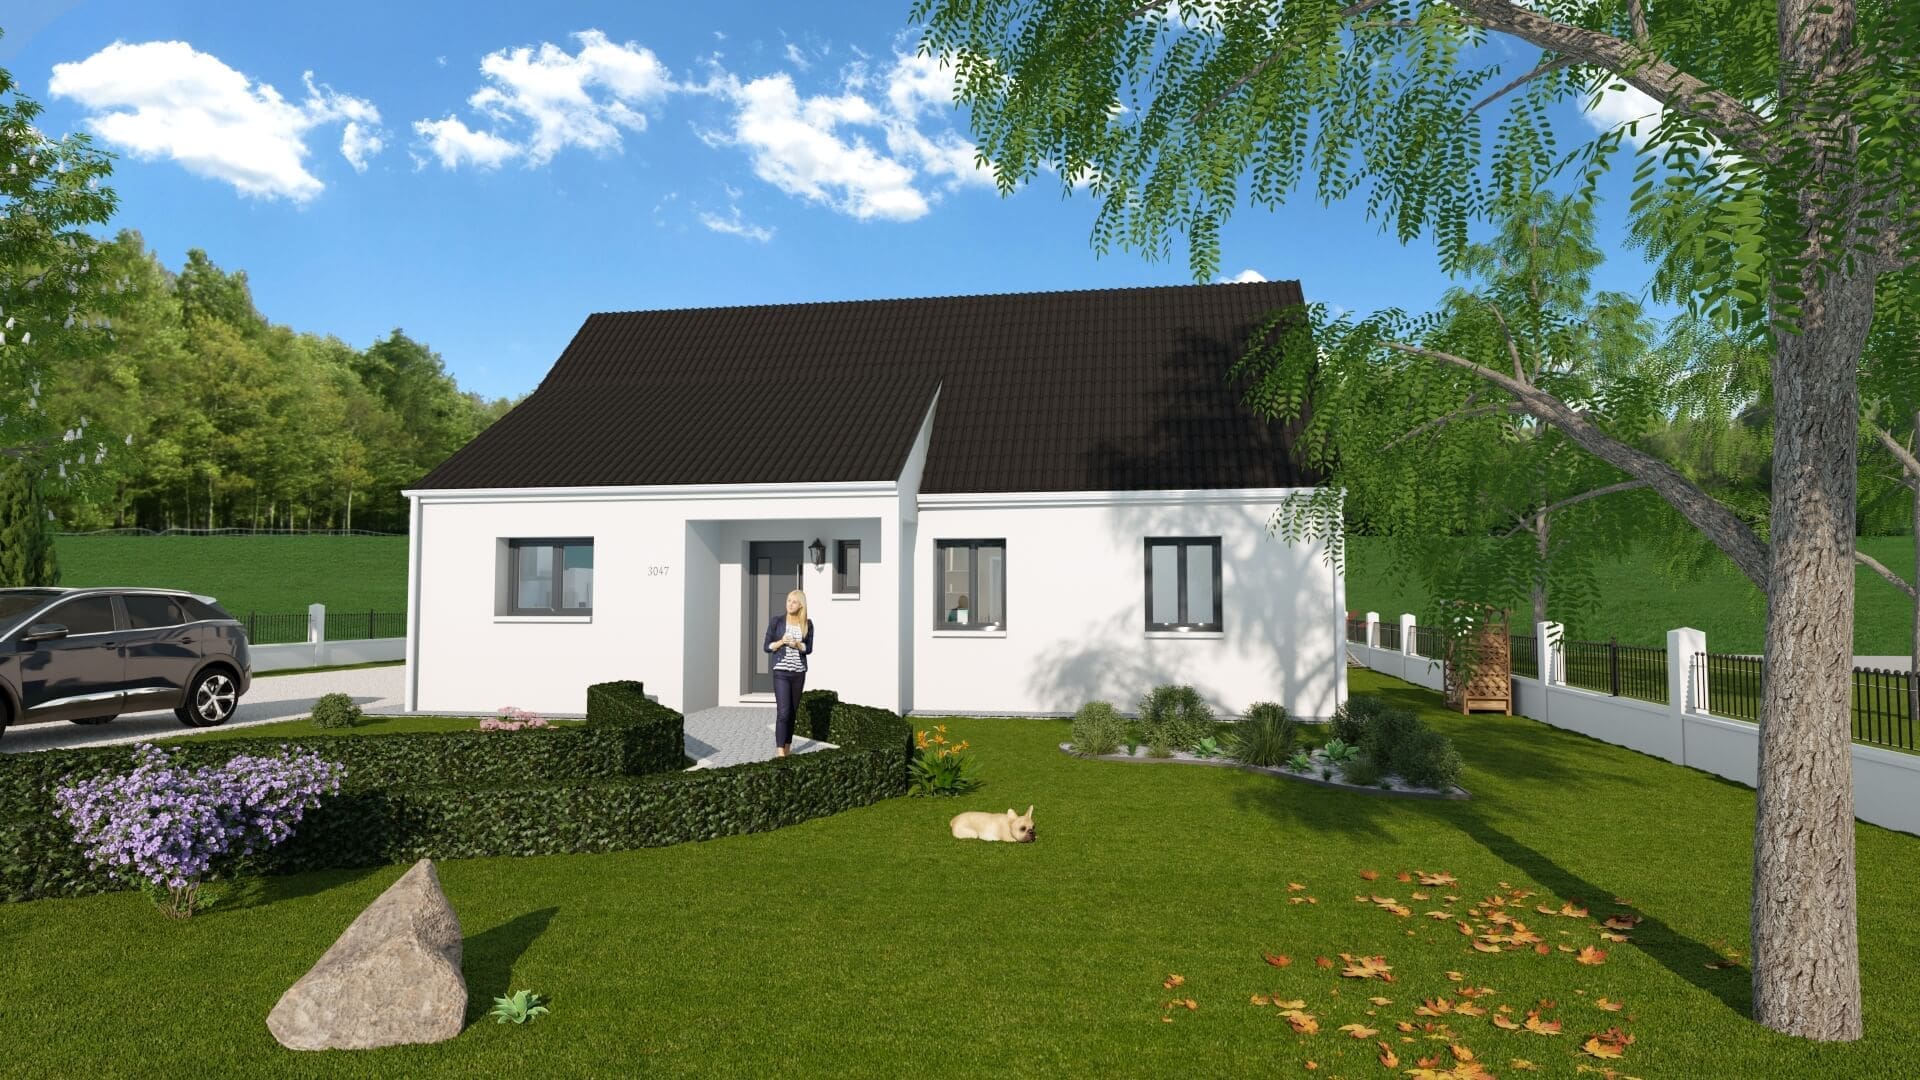 Plan de la maison Lina en 3D avec un grand jardin